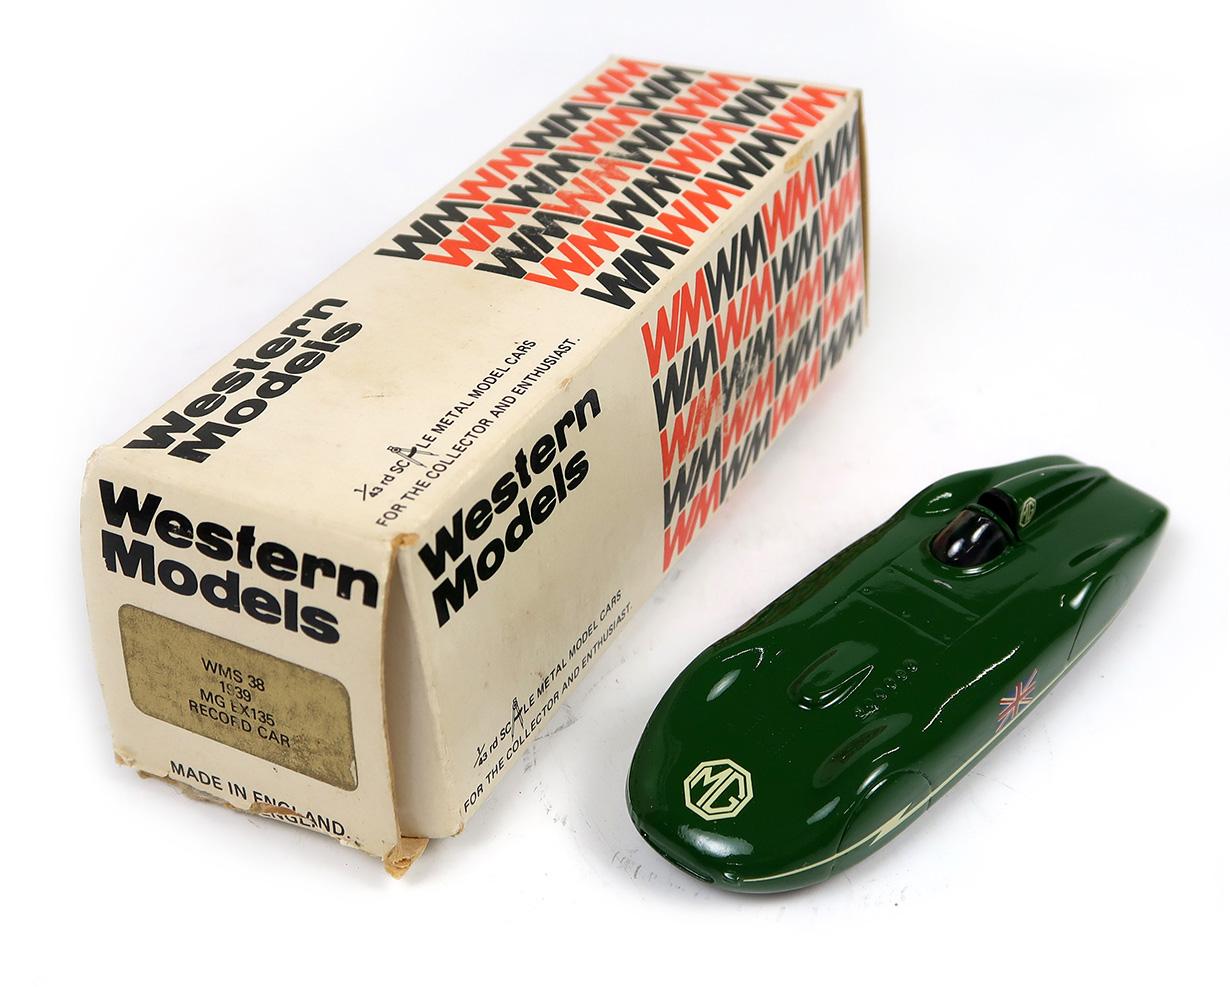 Western Models (4), Made in England, 1939 MG EX135 Record Car, 1964 Bluebir